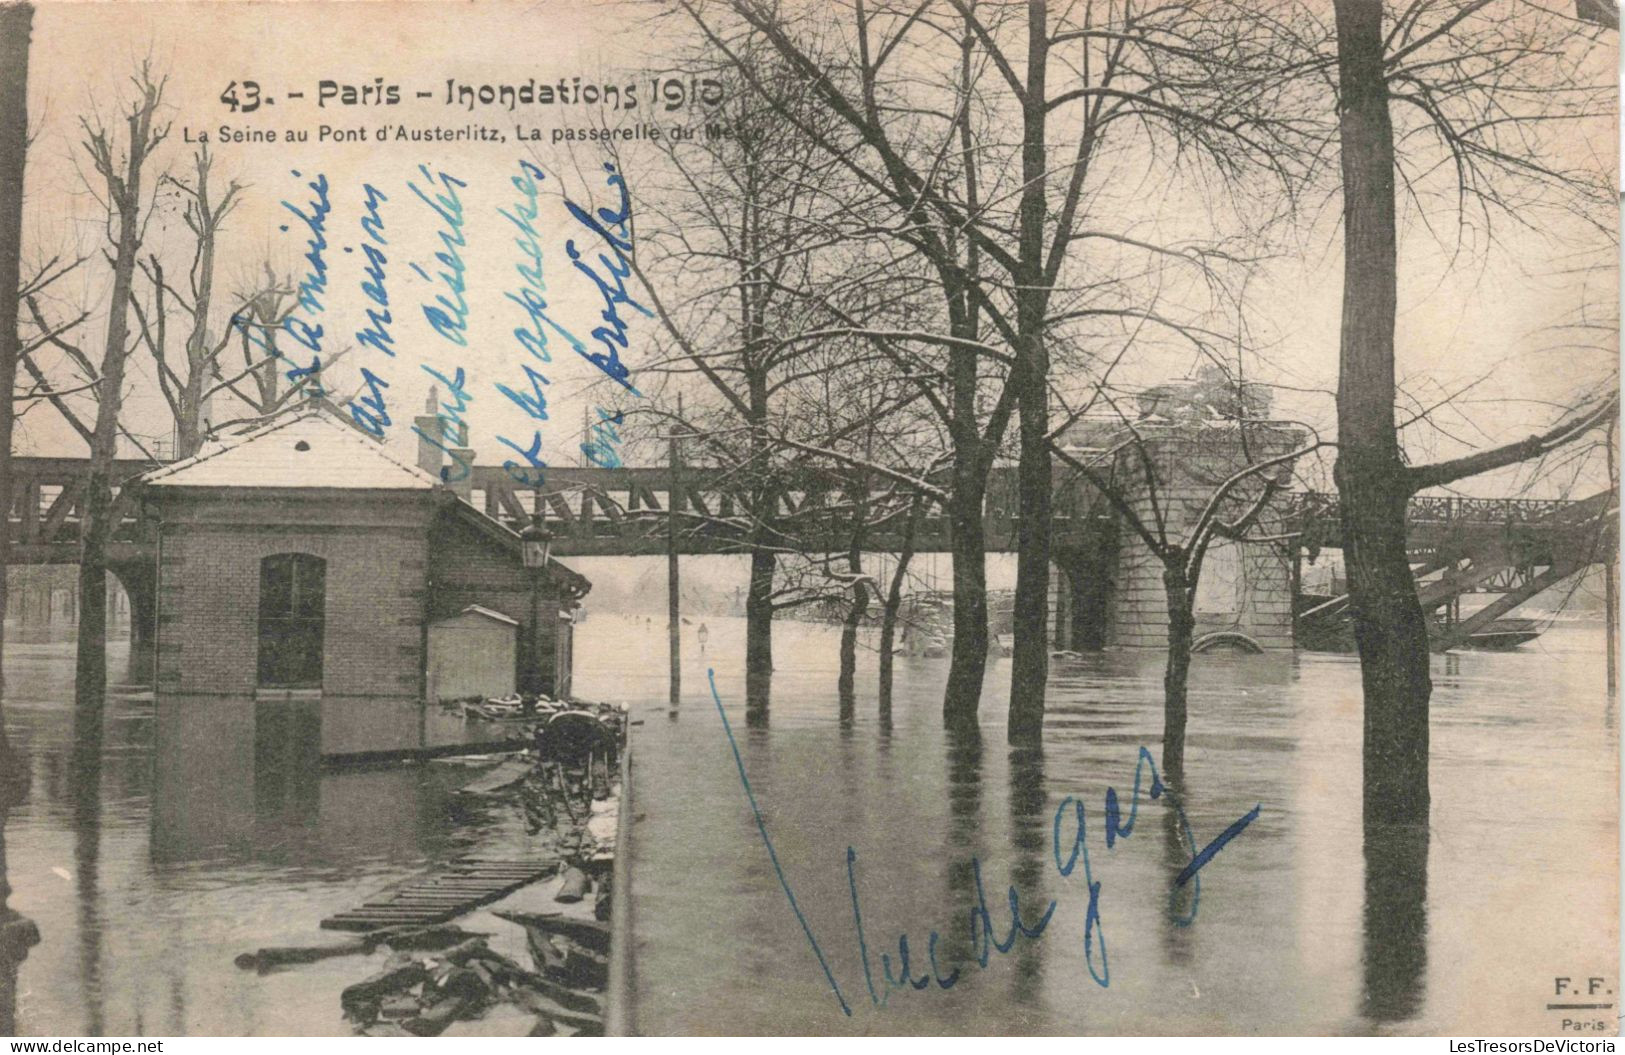 FRANCE - Paris - Inondations 1910 - La Seine Au Pont D'Austerlitz - Carte Postale Ancienne - Paris Flood, 1910